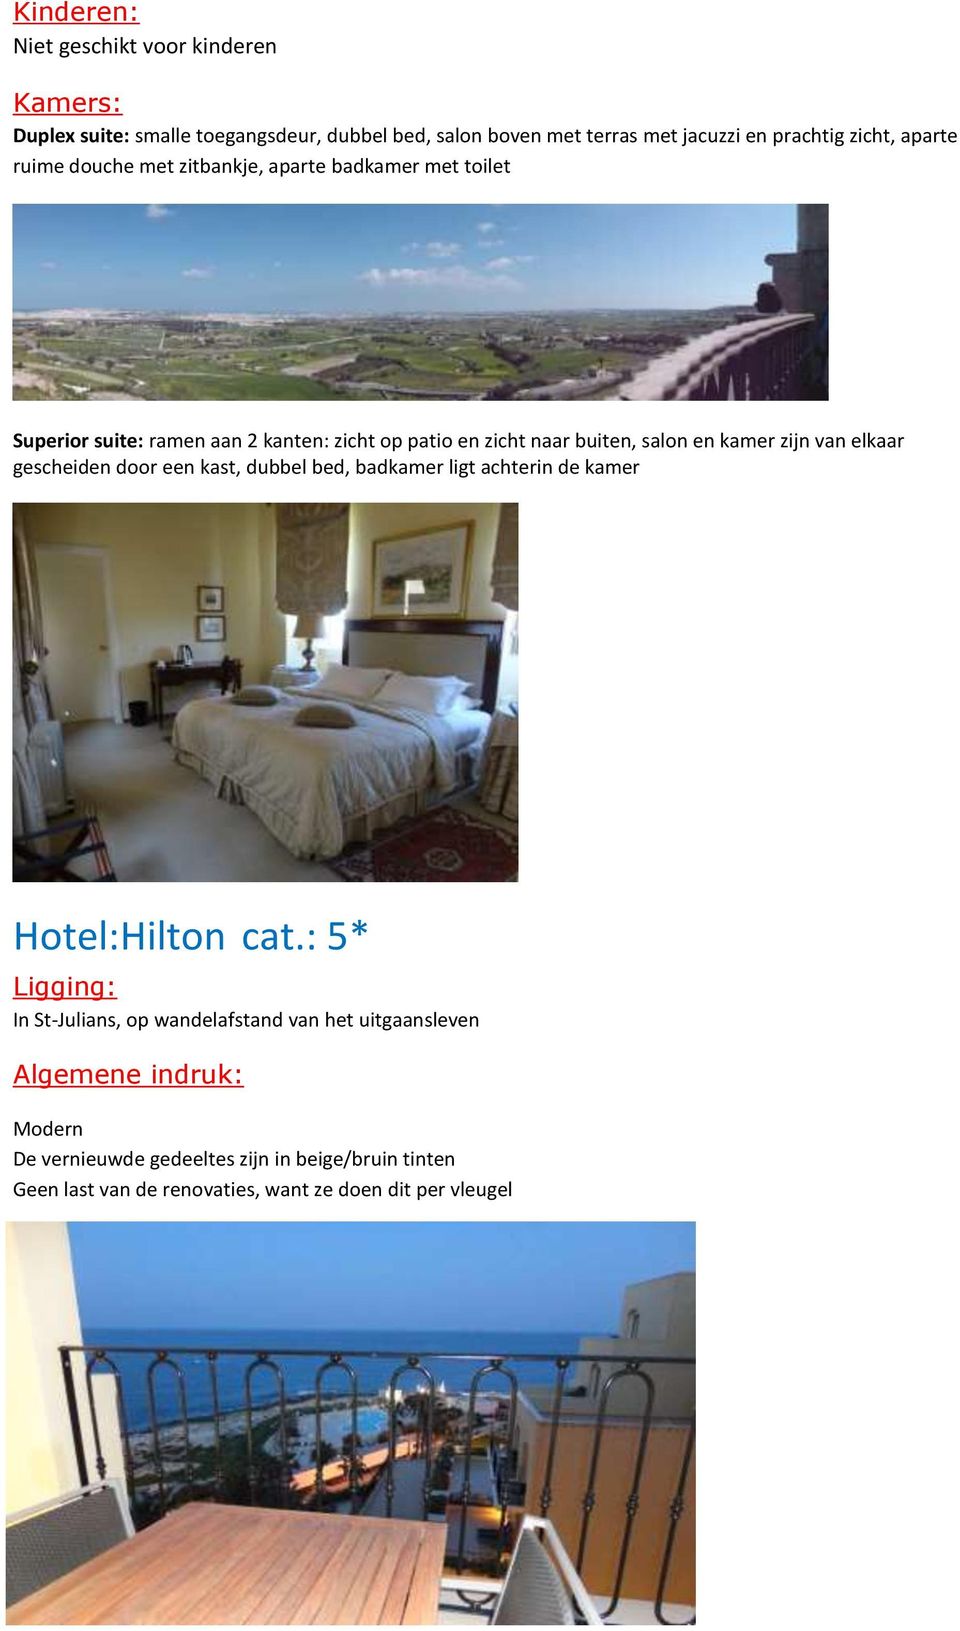 en kamer zijn van elkaar gescheiden door een kast, dubbel bed, badkamer ligt achterin de kamer Hotel:Hilton cat.